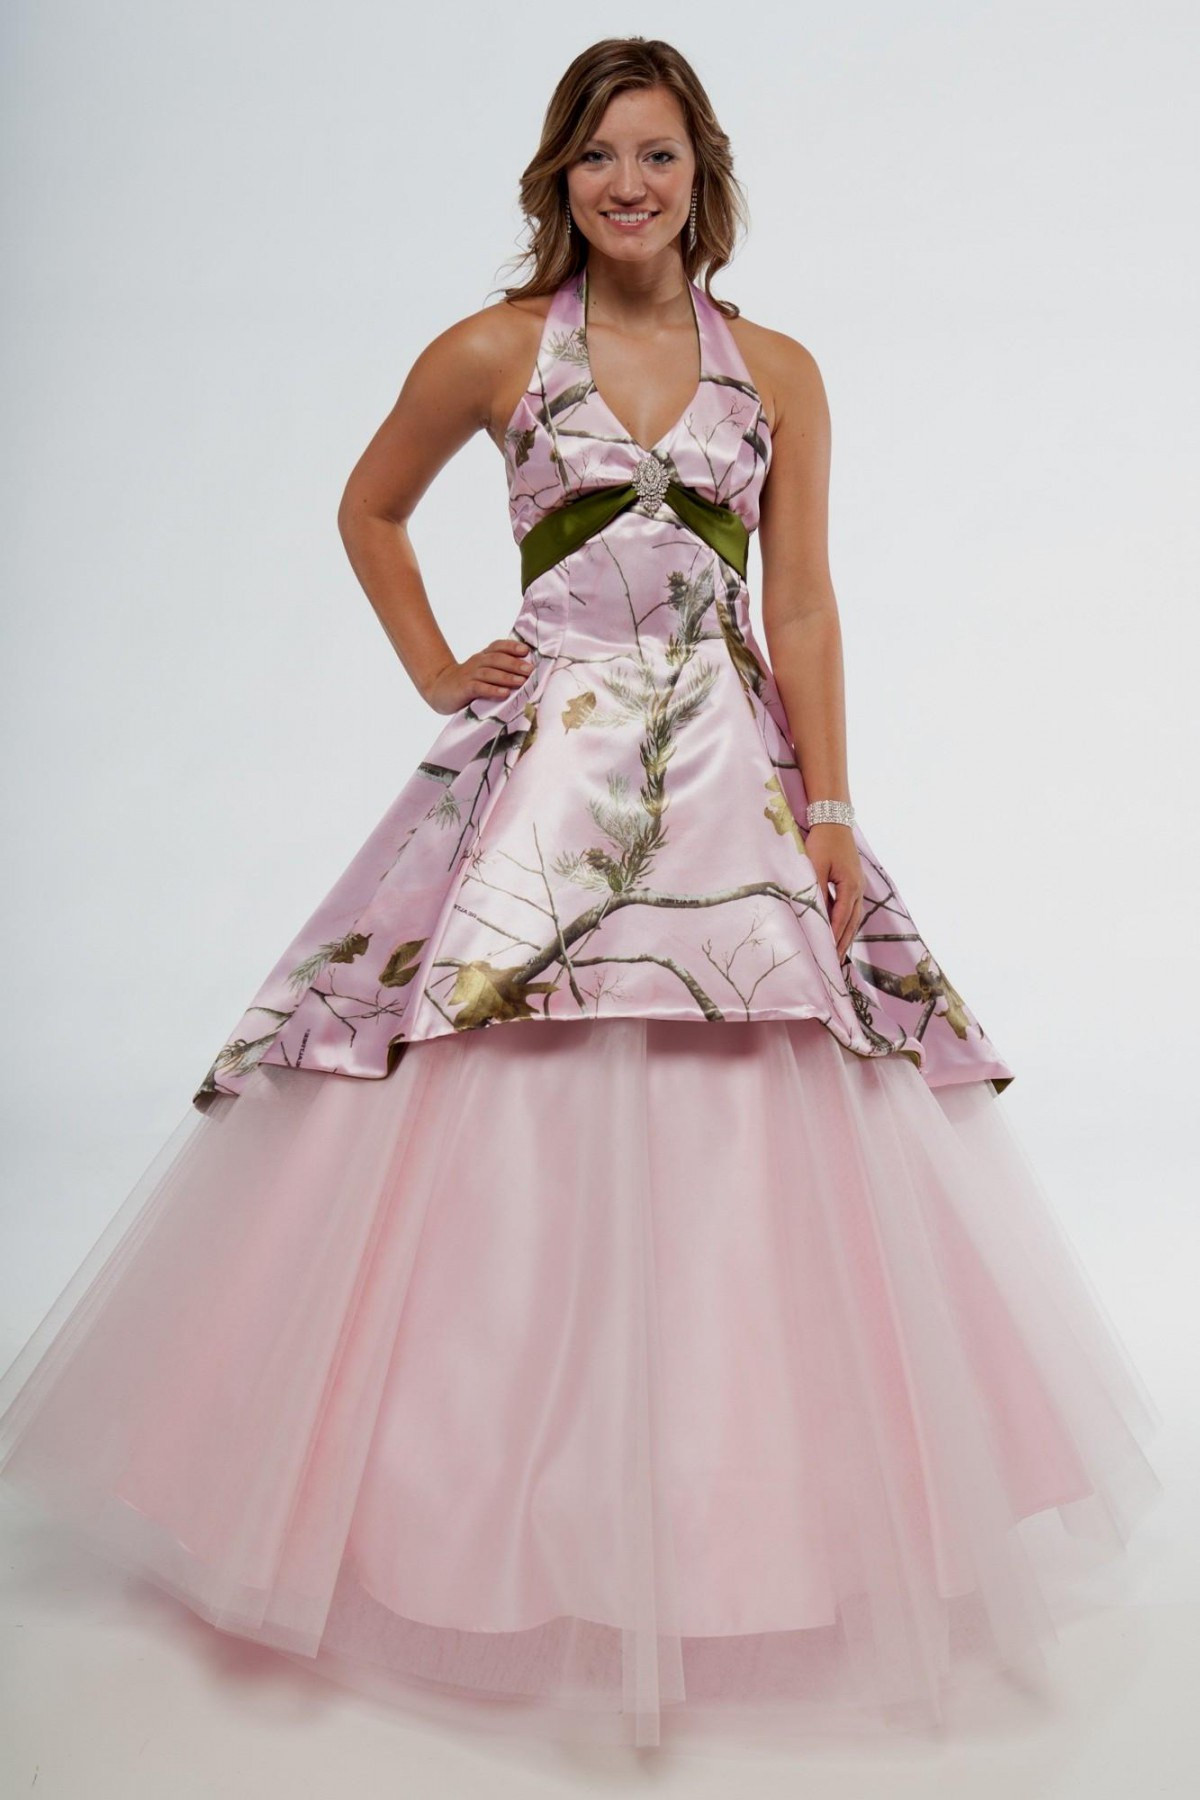 Pink Camo Wedding Dress
 How to Look Feminine in Camo Wedding Dresses